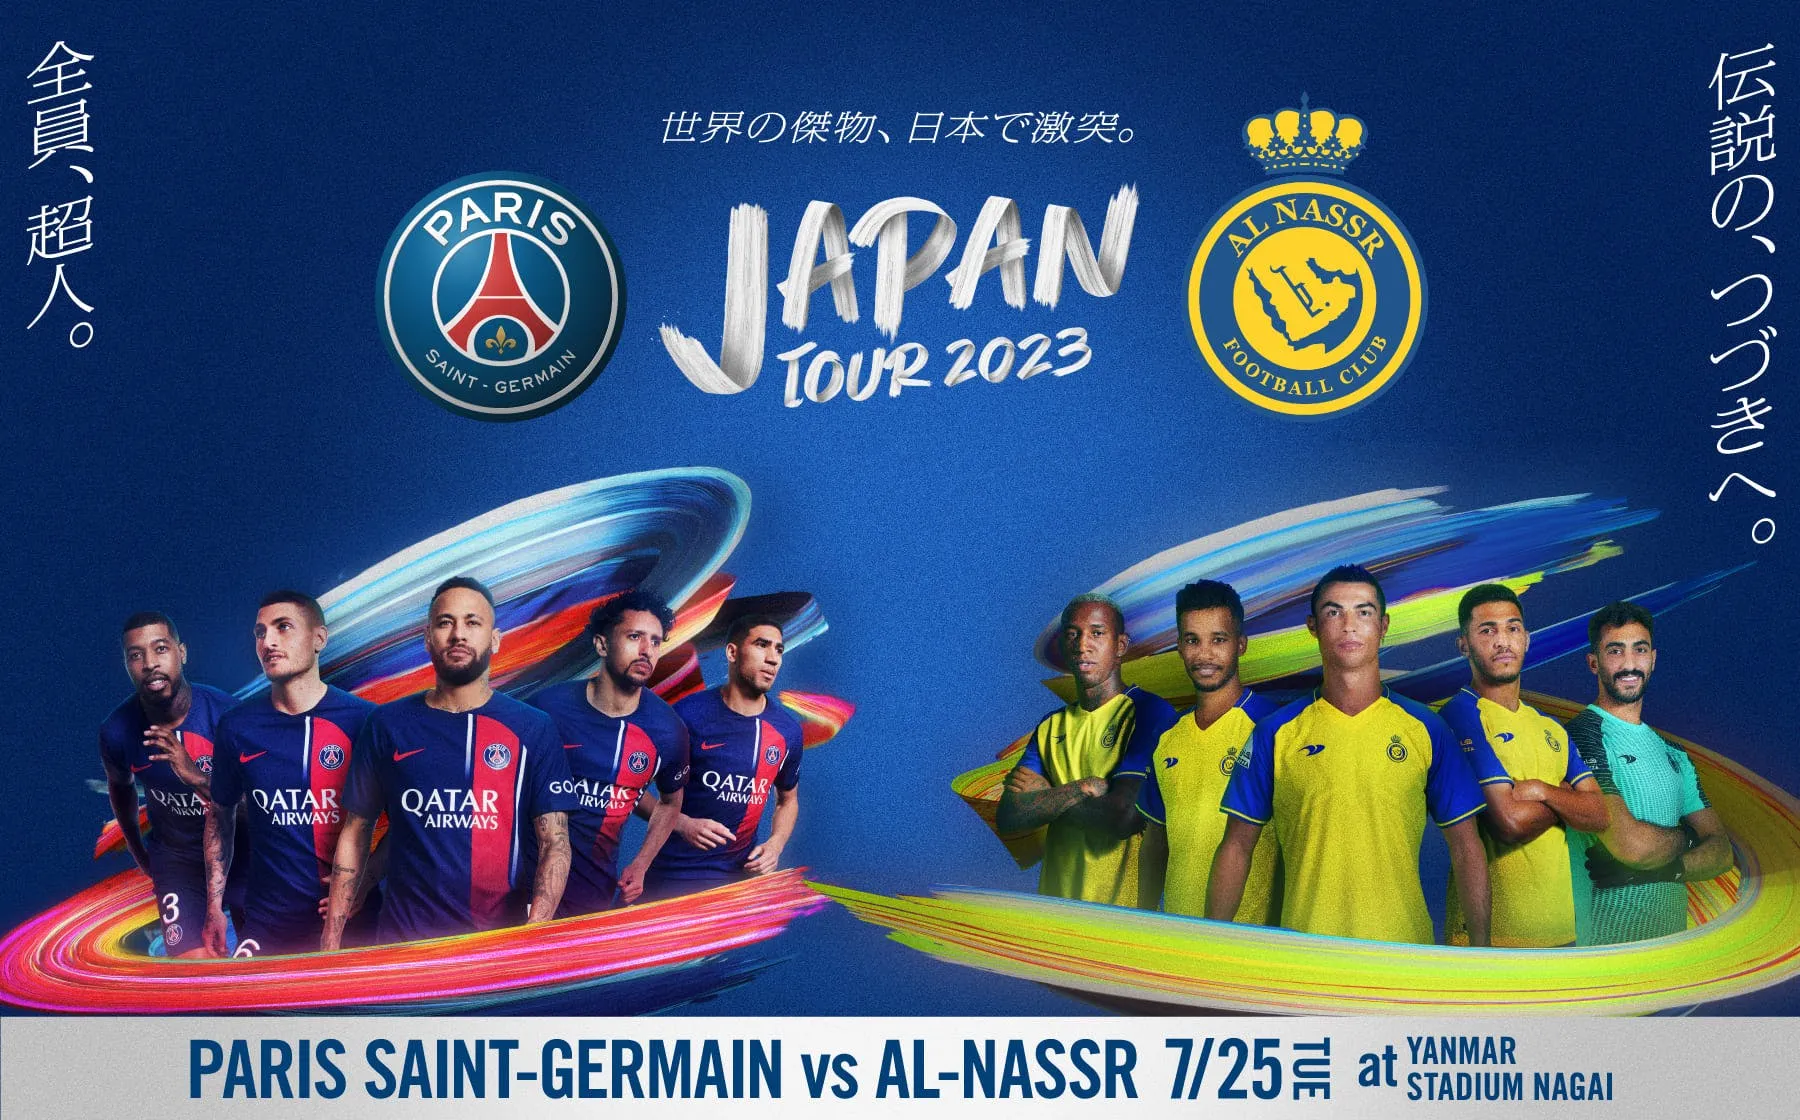 JAPAN TOUR 2023|ticketbook